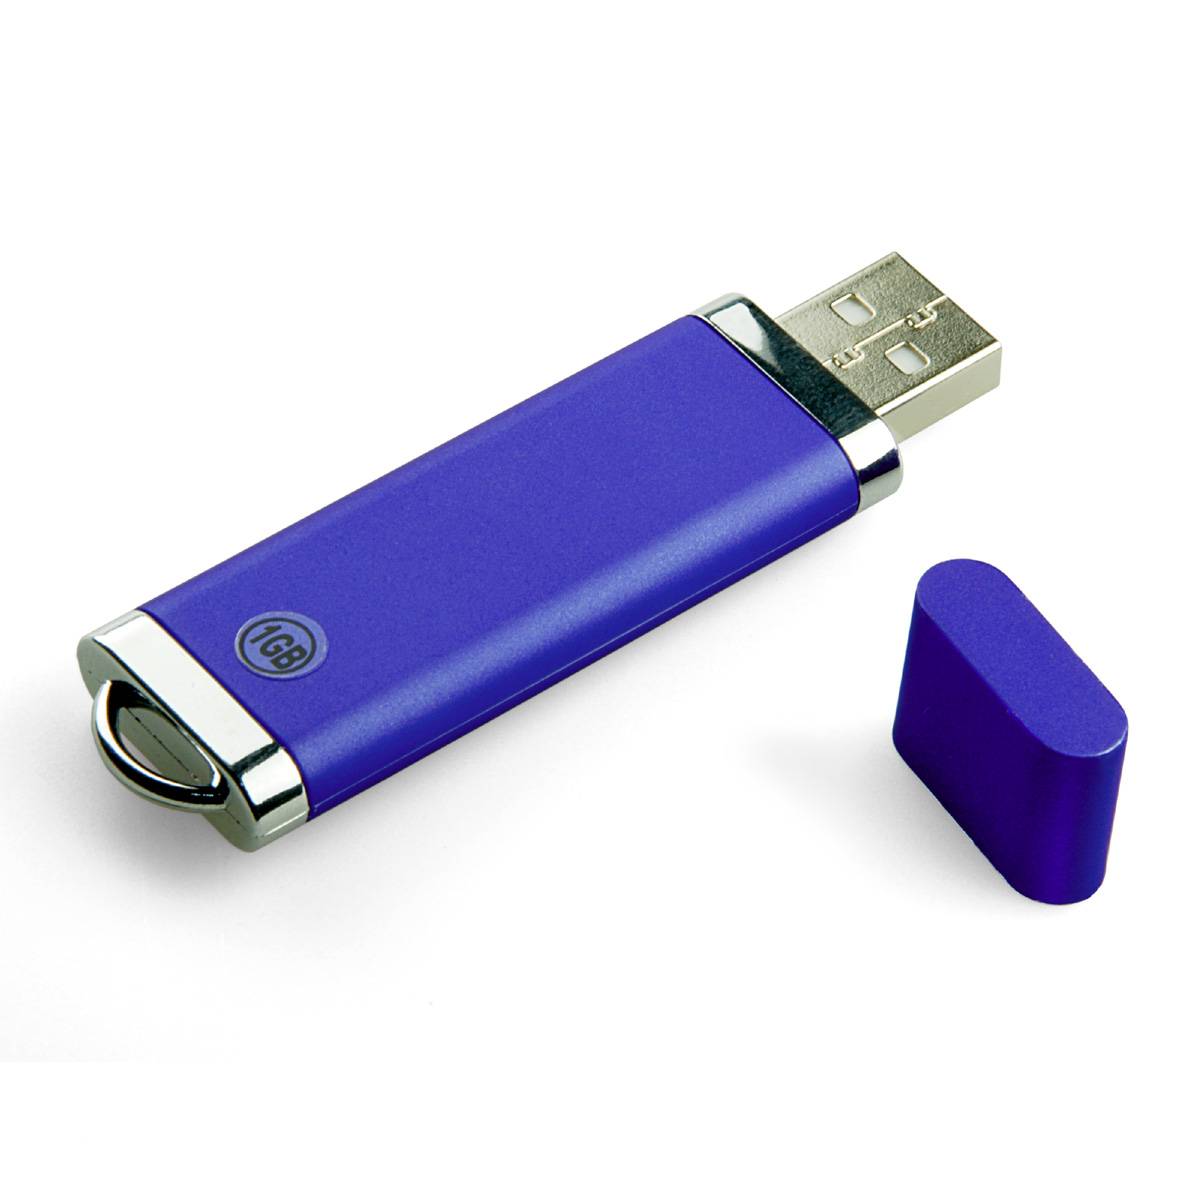 Что представляет собой usb накопитель. Флешка Pilotech USB 2.0 Mini Flash Disk 512mb. USB накопитель 3.0. USB флеш накопитель e-Flash FLASHDRIVE. Флешка пластиковая Протос промо "Protos Promo" s12 белый 4 ГБ.